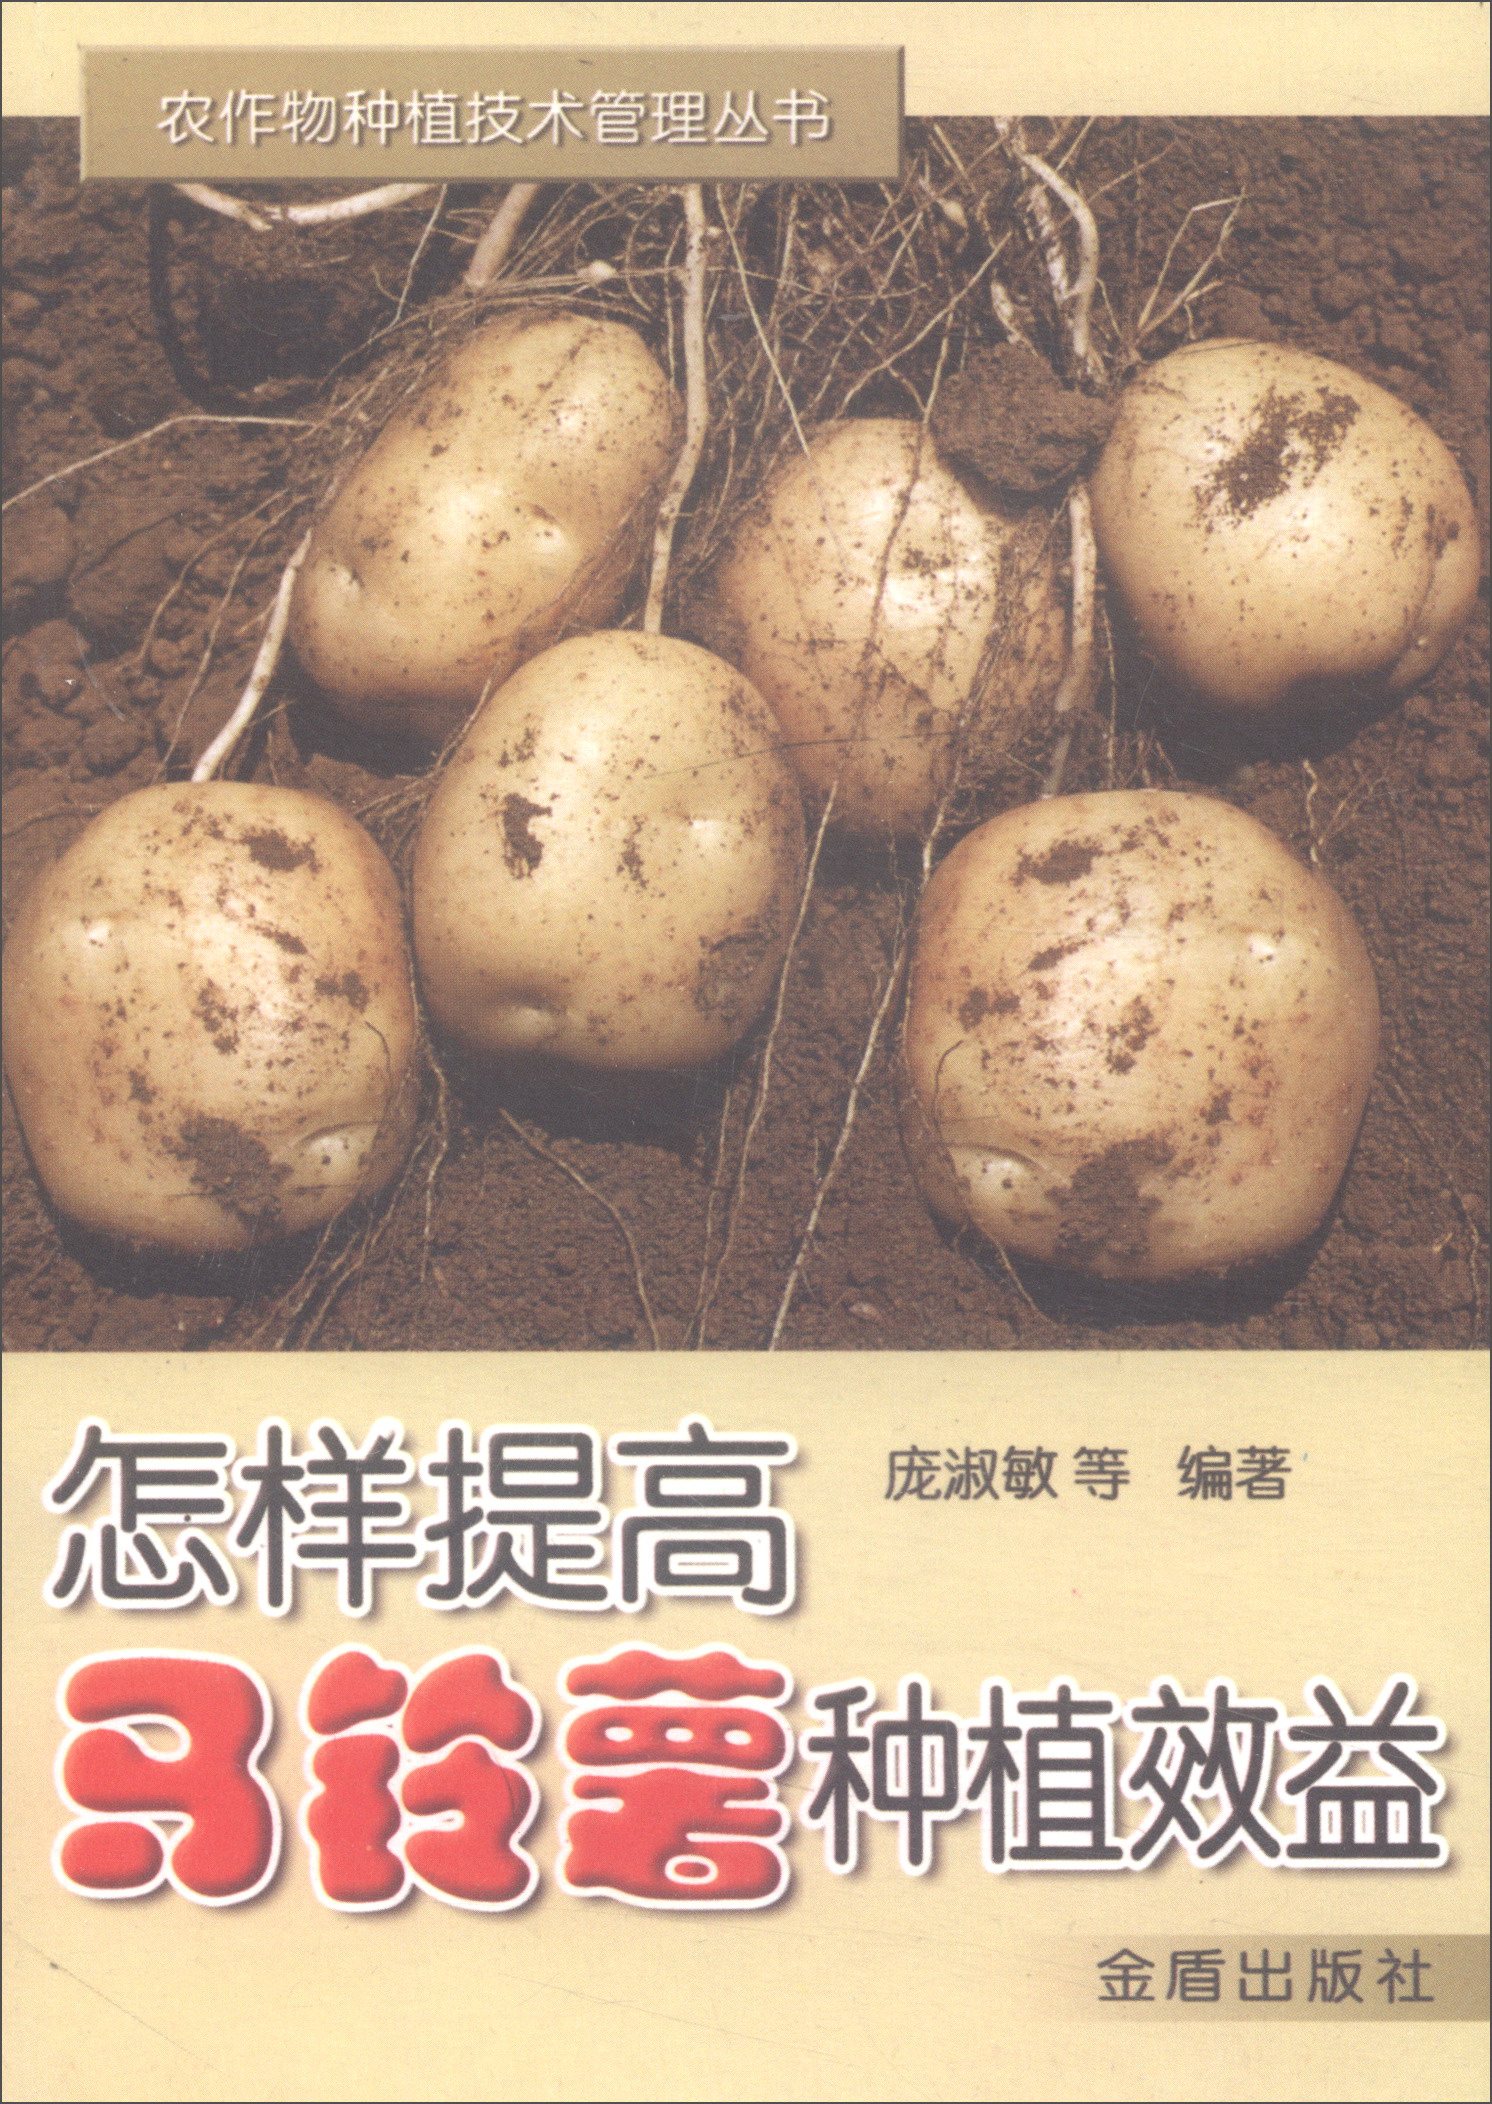 怎样提高马铃薯种植效益/农作物种植技术管理丛书 mobi格式下载